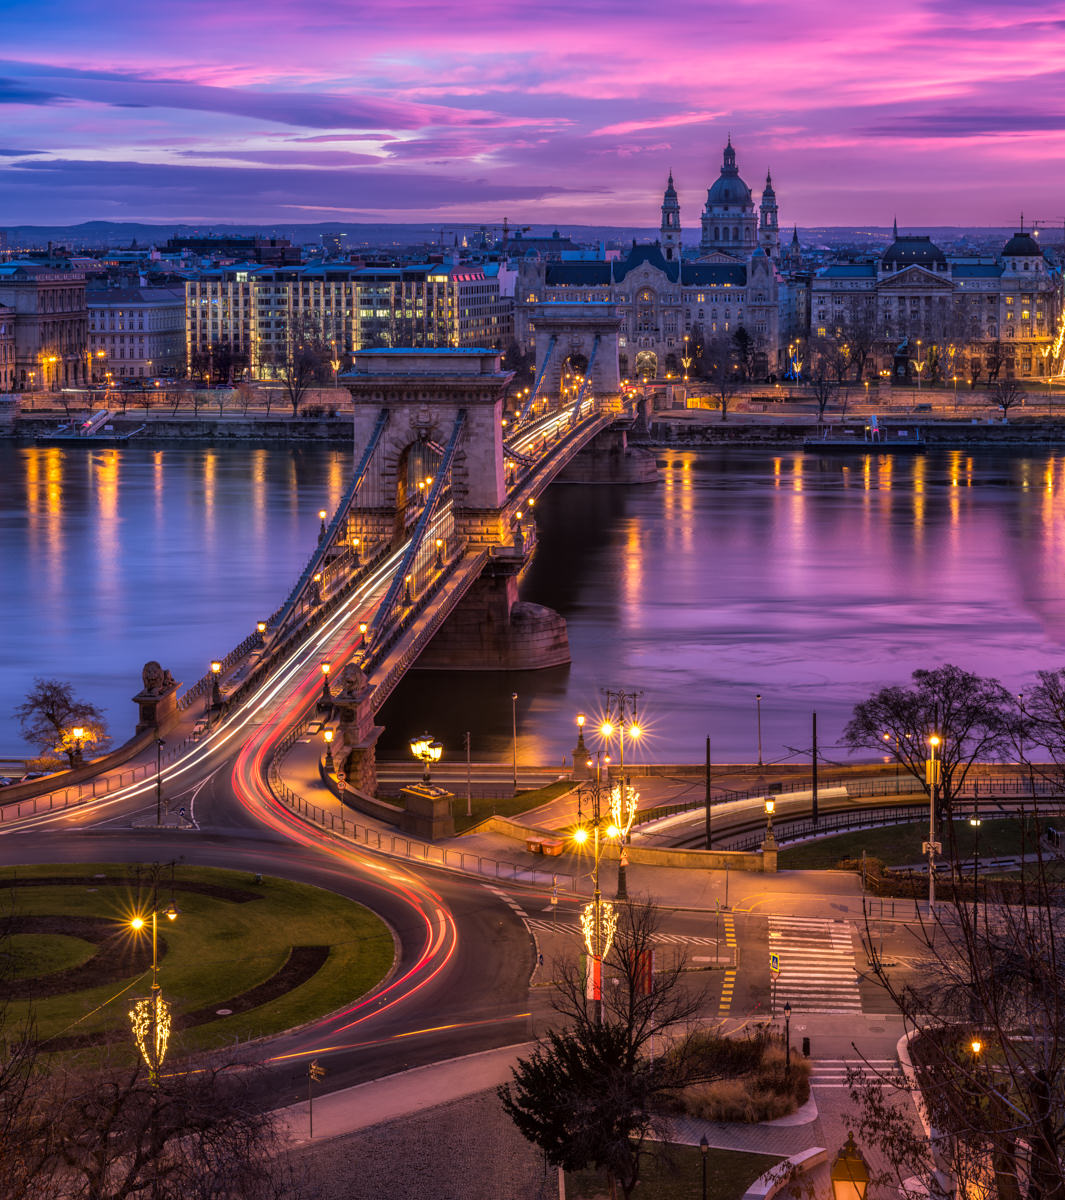 City Photography: Sunrise over Budapest